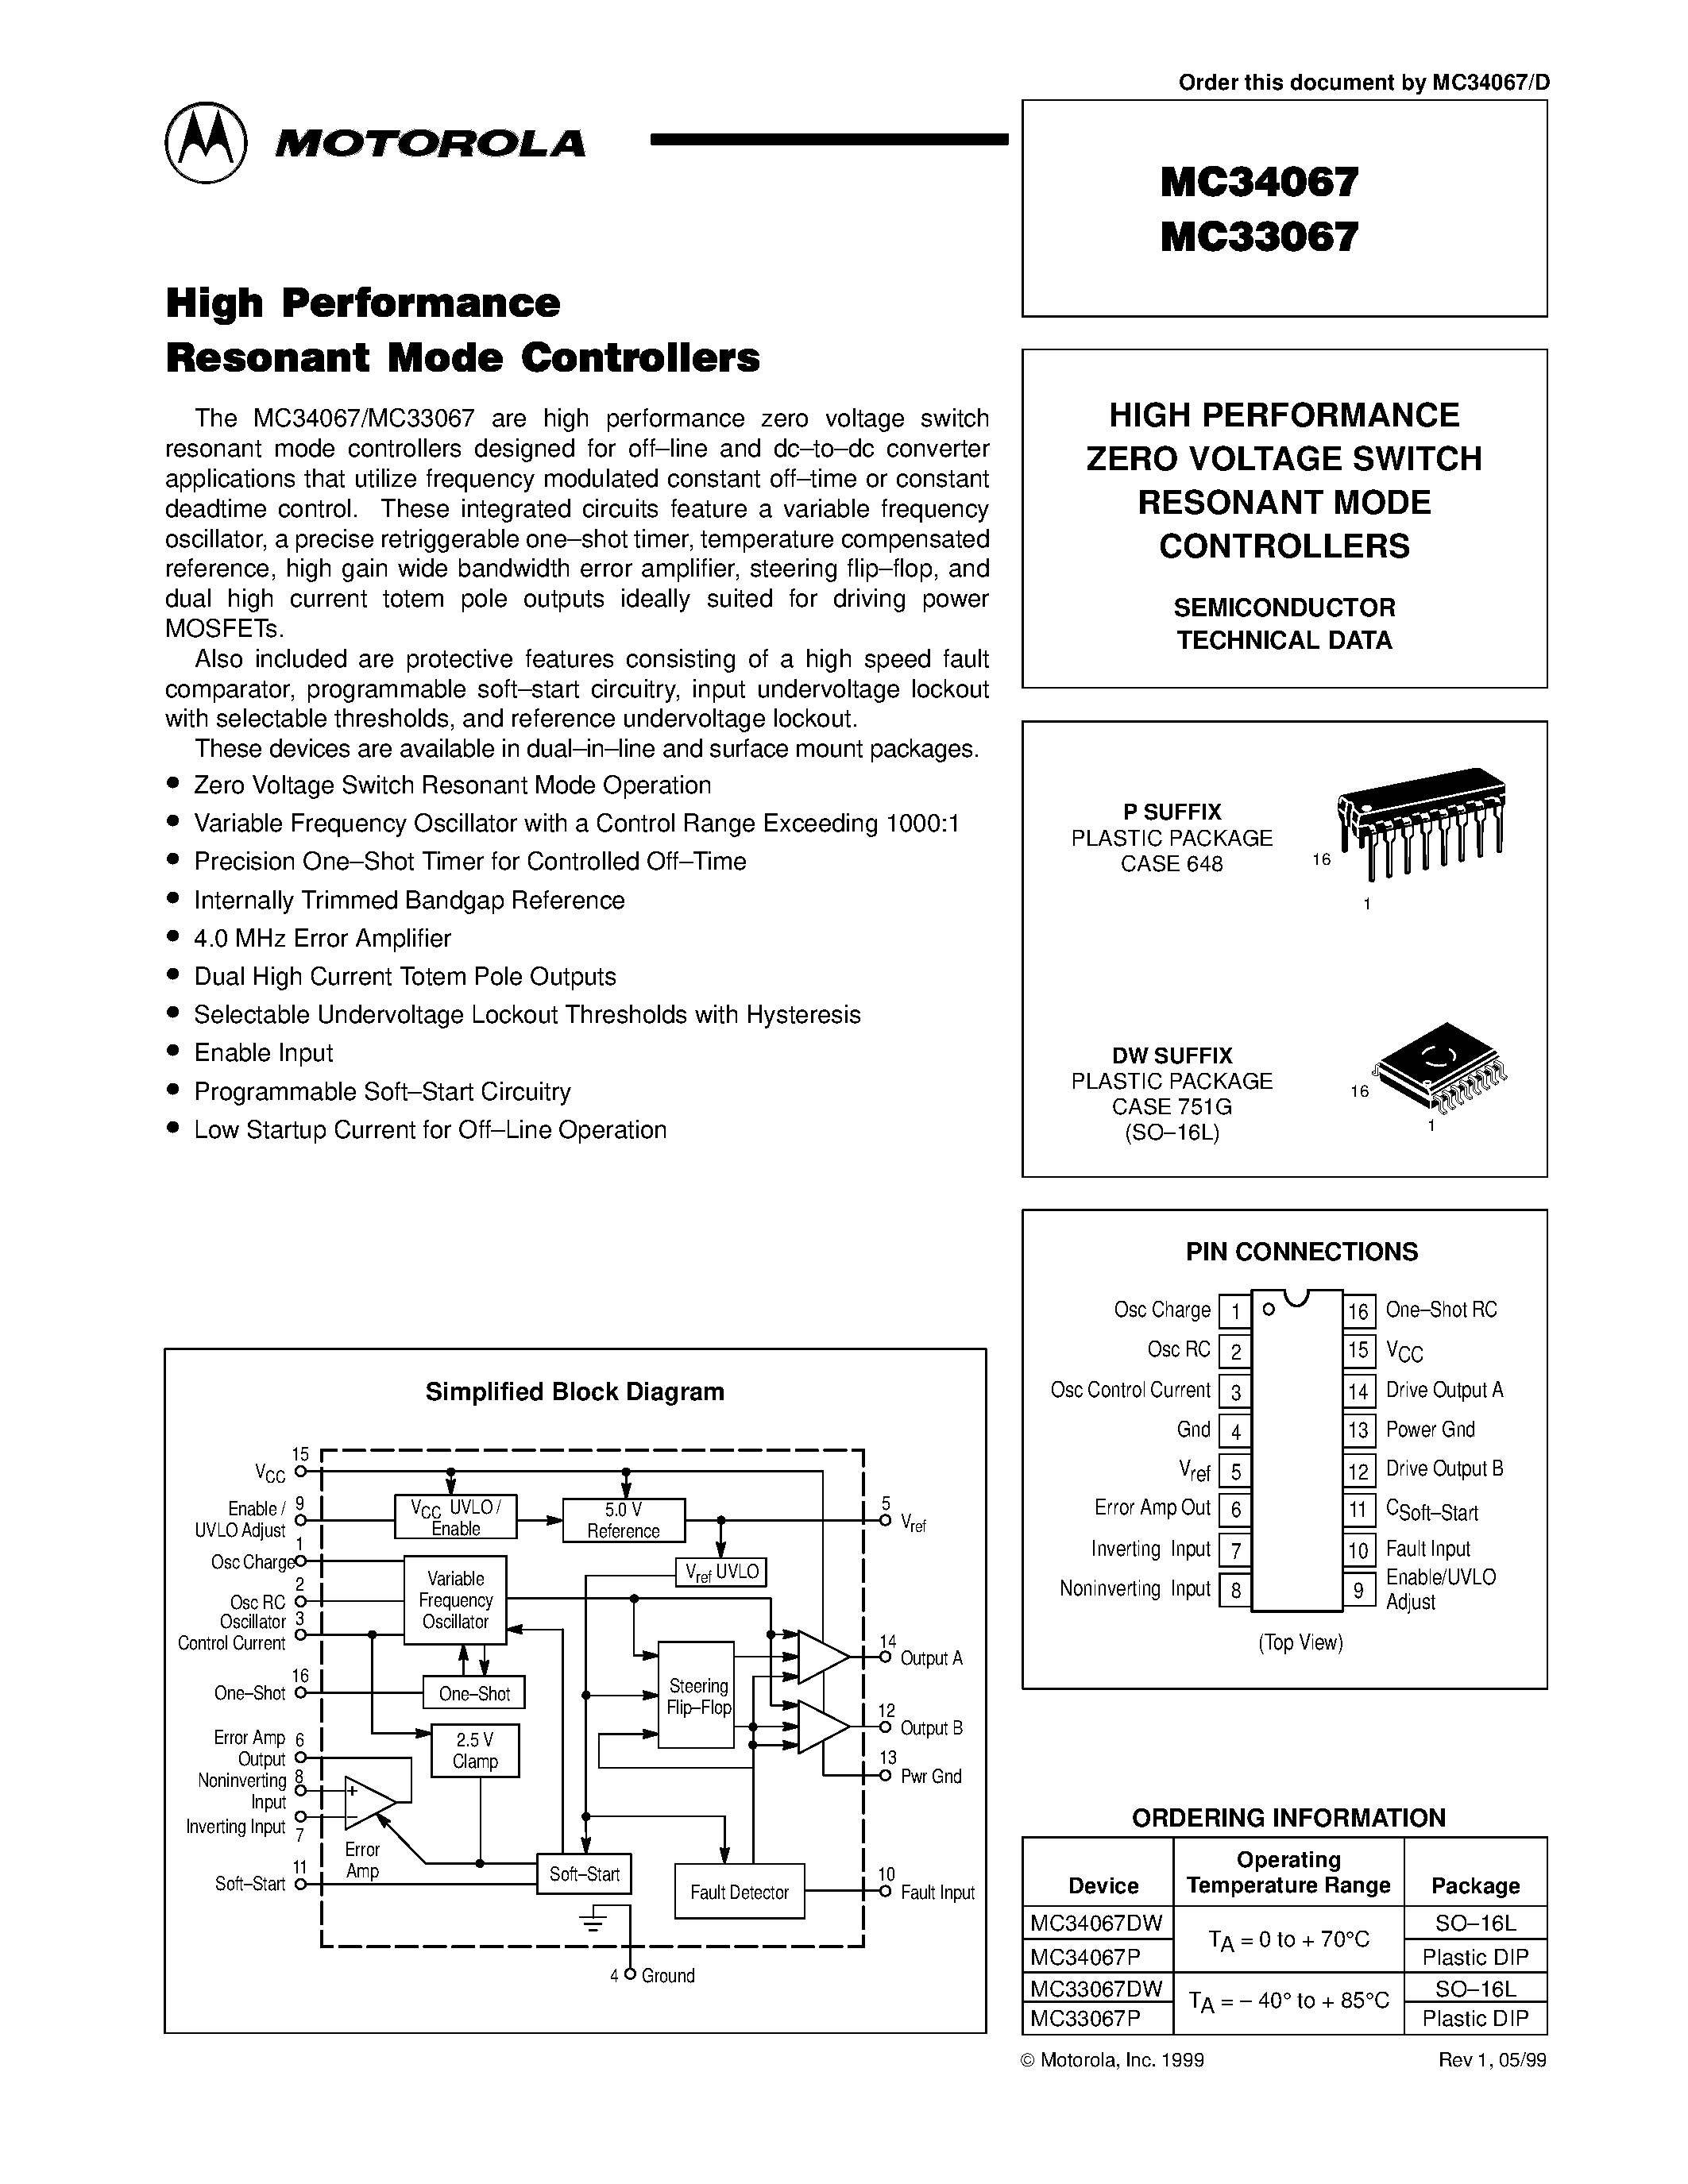 Даташит MC33067 - (MC33067 / MC34067) HIGH PERFORMANCE ZERO VOLTAGE SWITCH RESONANT MODE CONTROLLERS страница 1